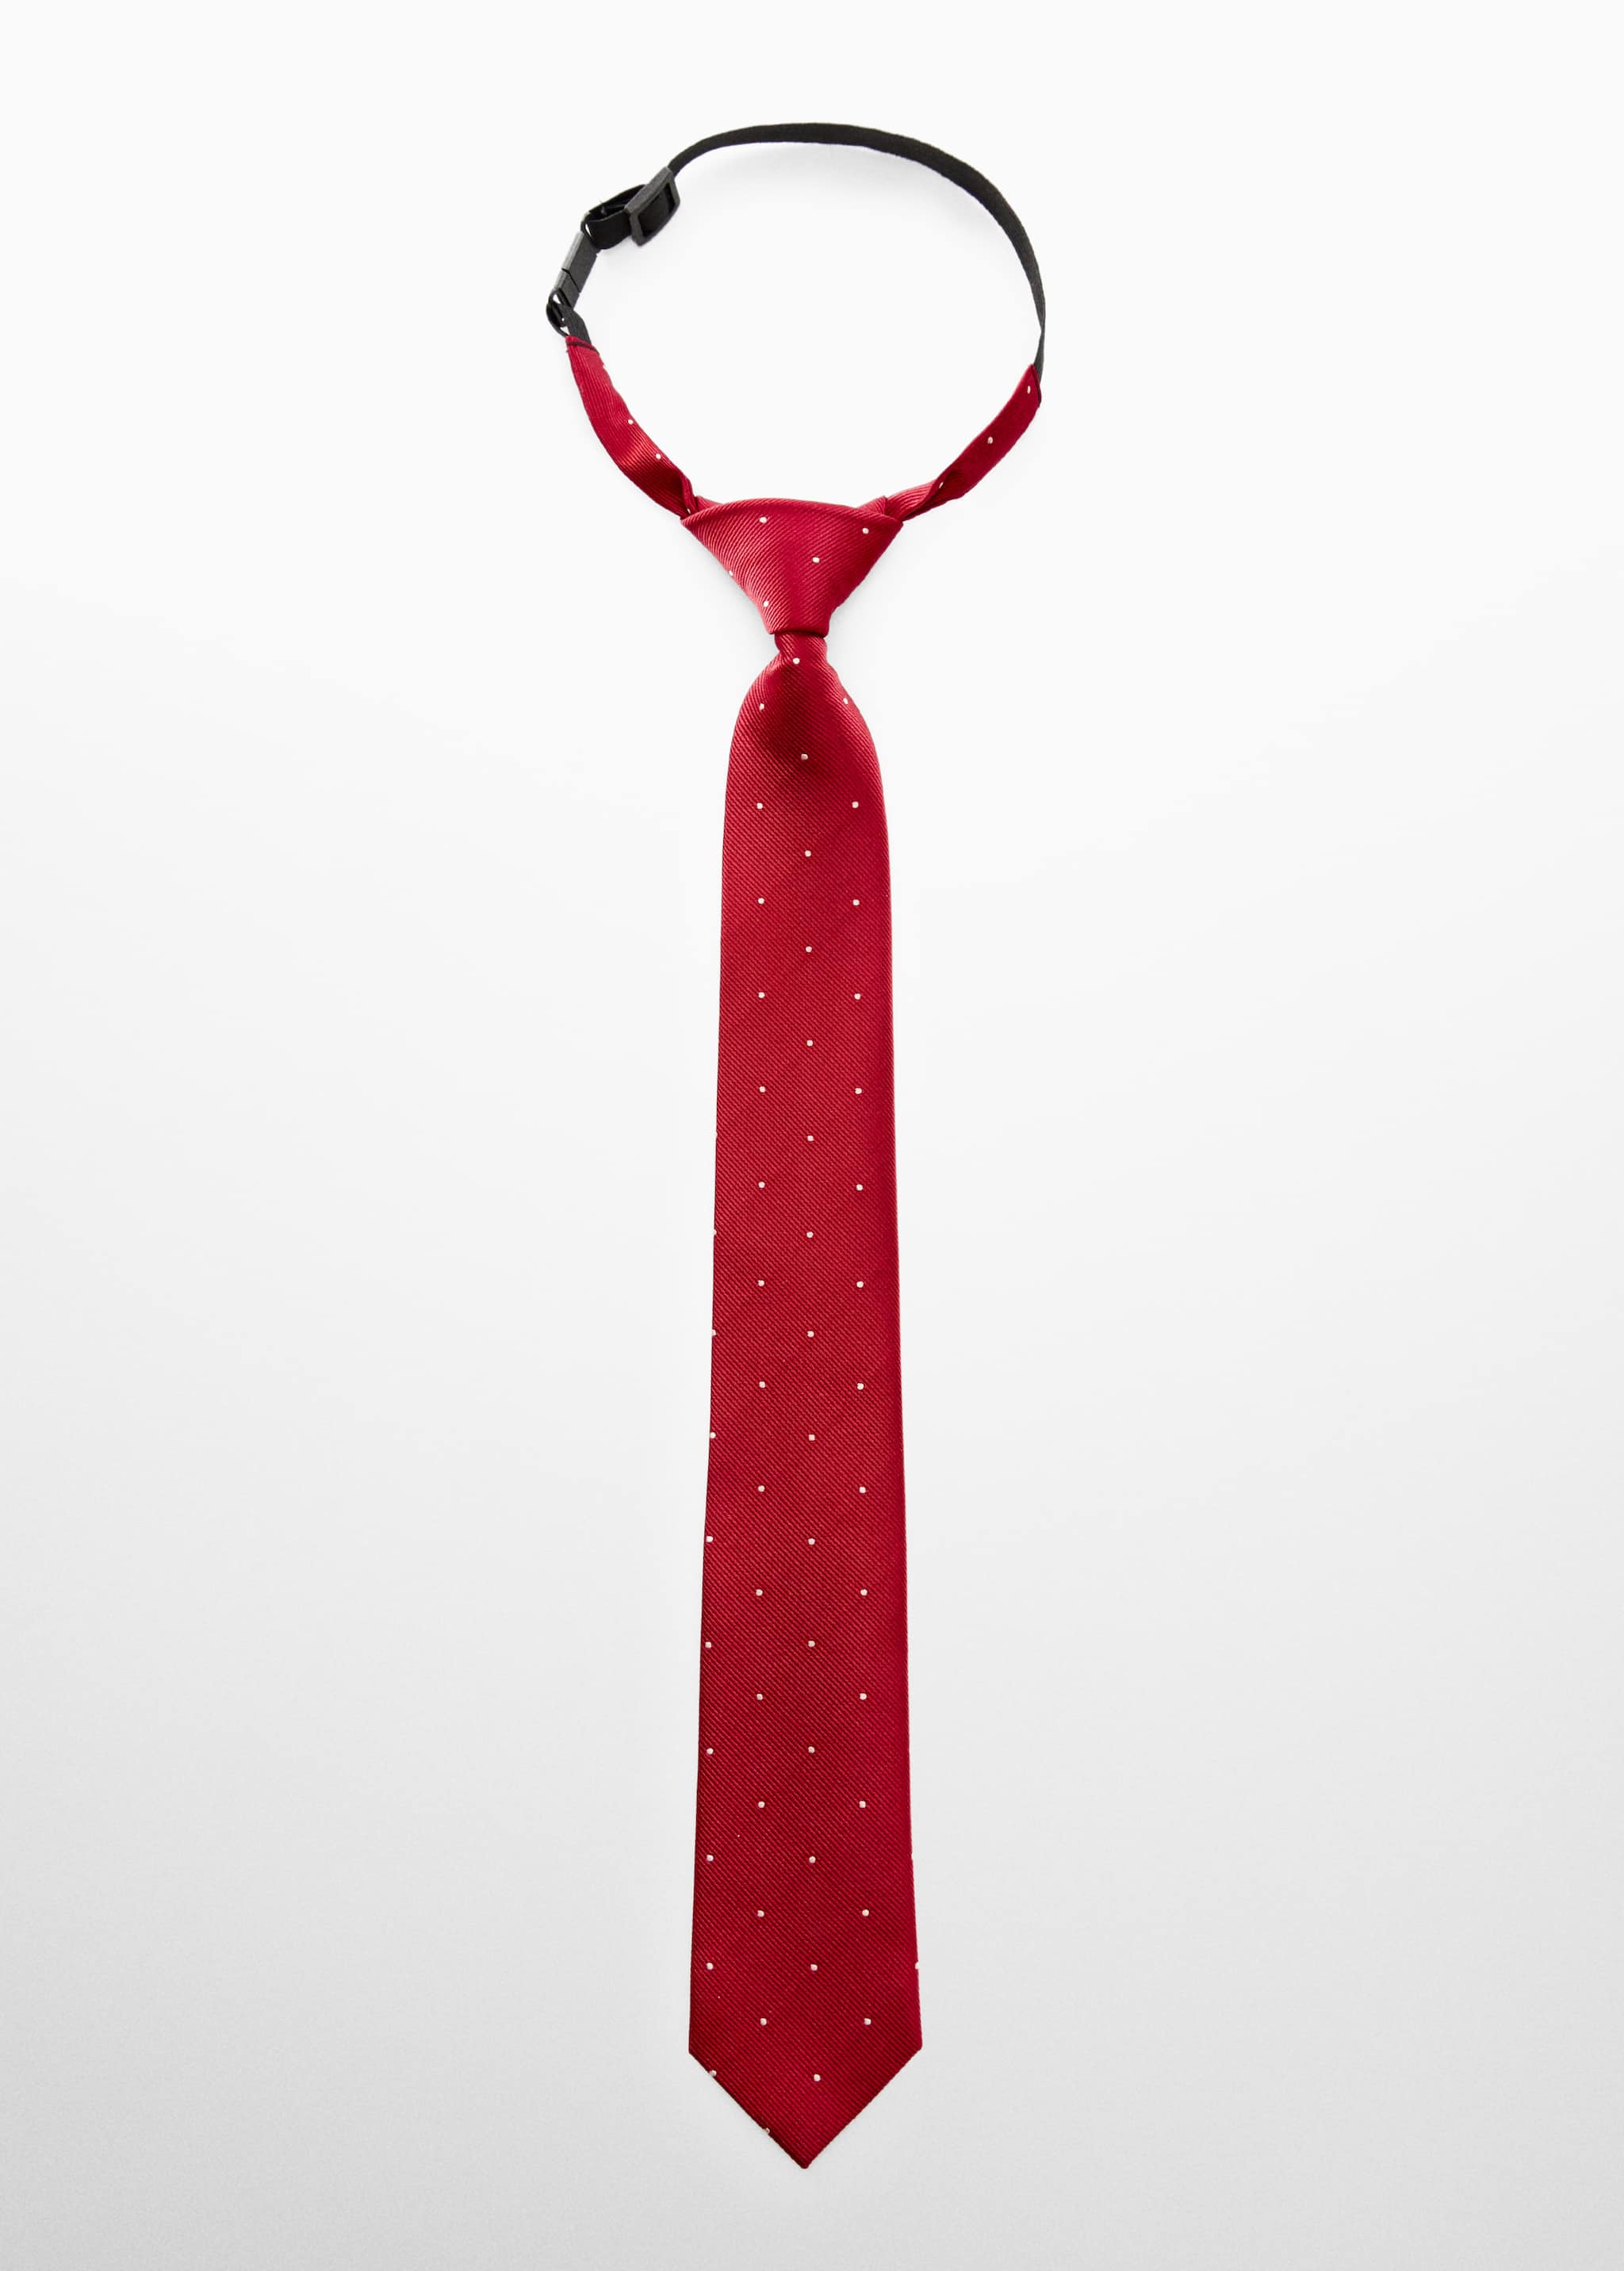 Cravate à pois - Article sans modèle